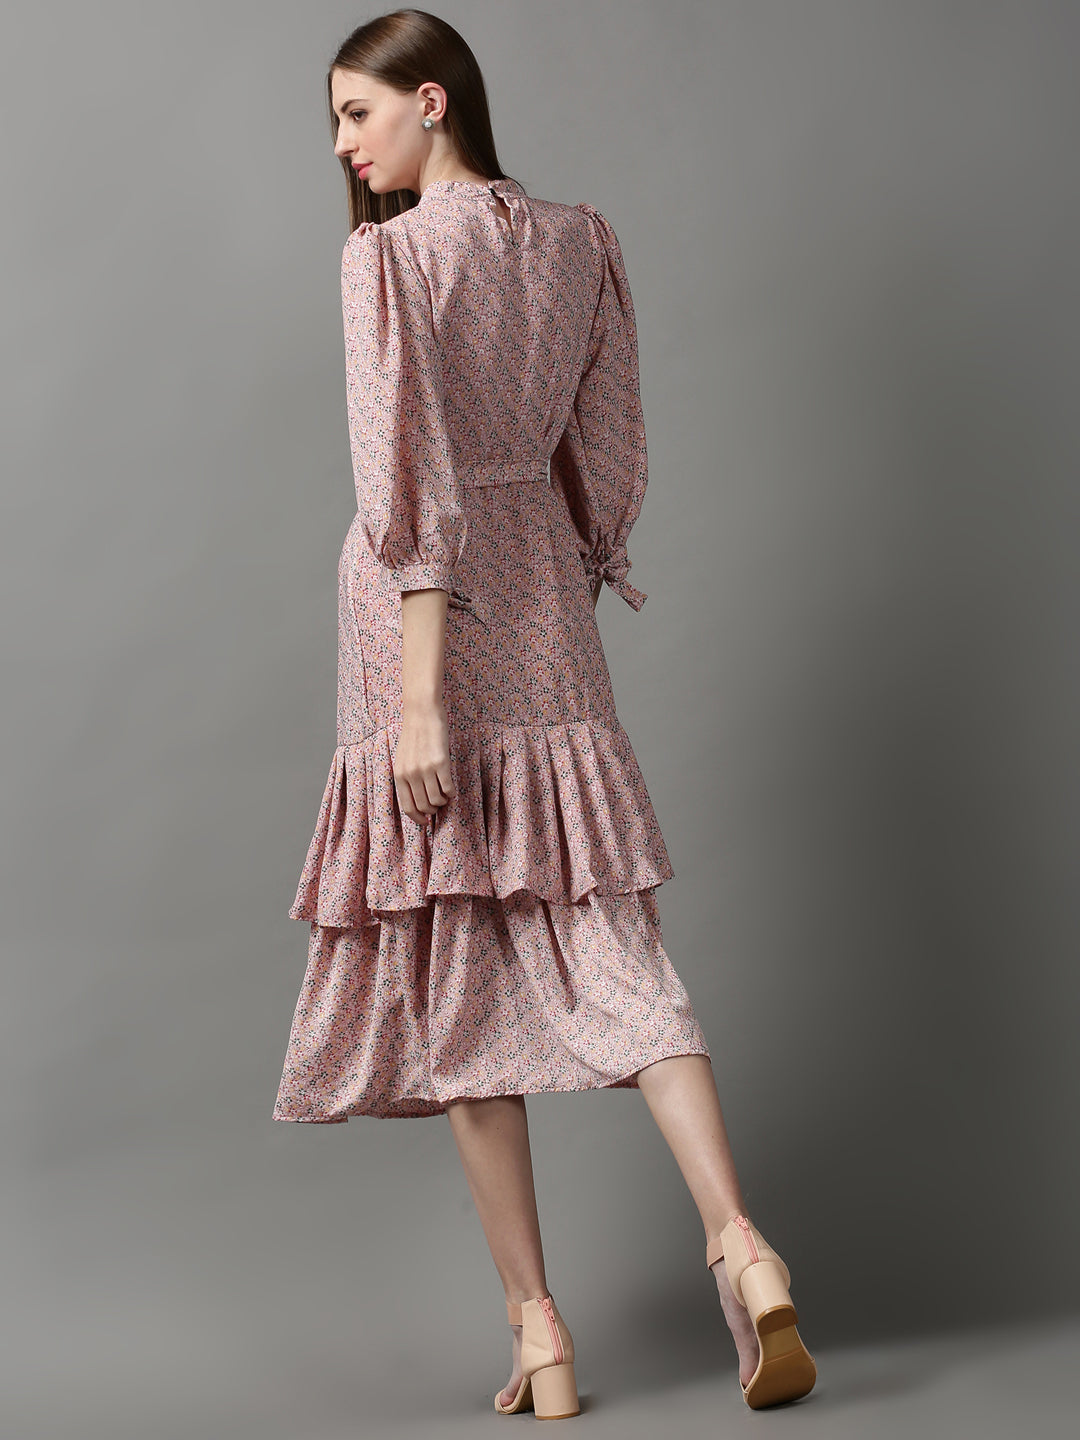 Women's Pink Printed Drop-Waist Dress